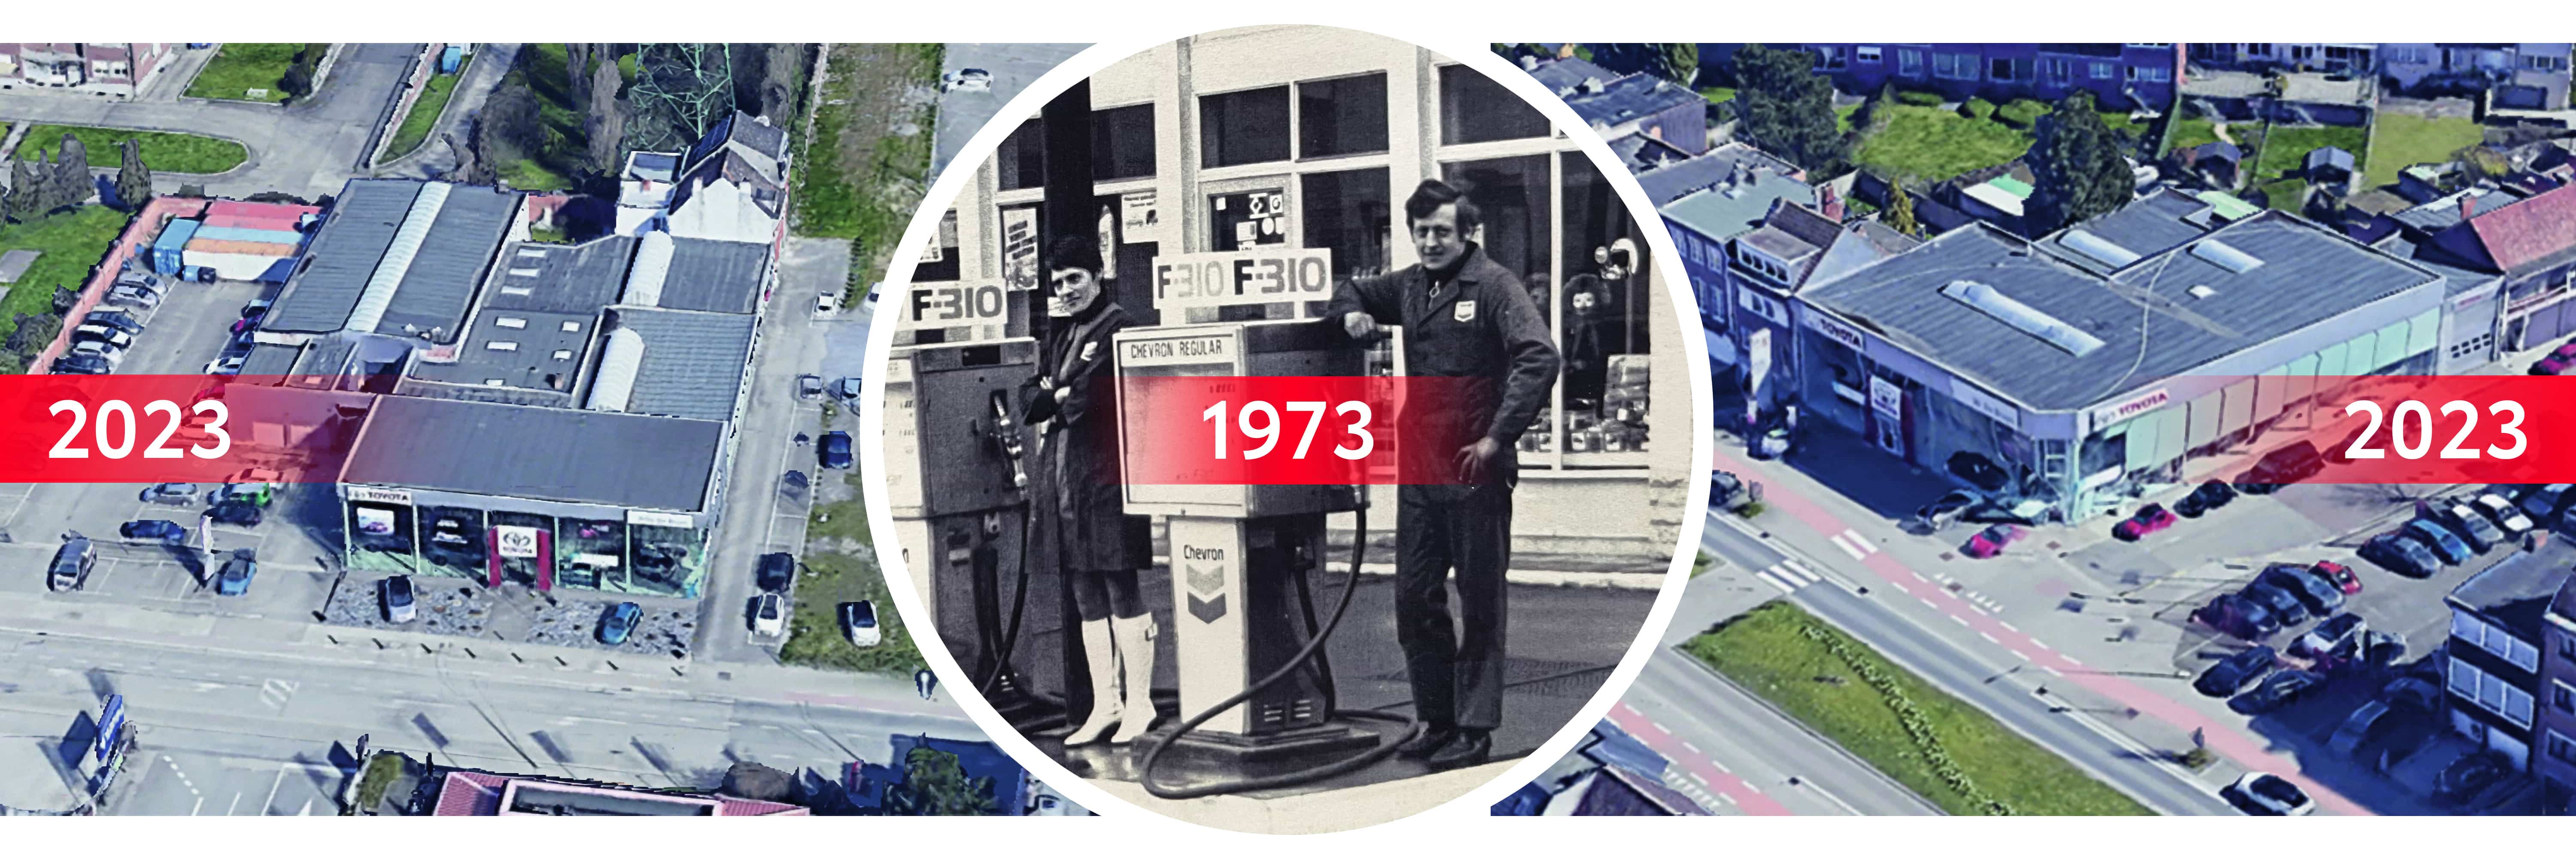 50 jaar Toyota W. De Bruyn